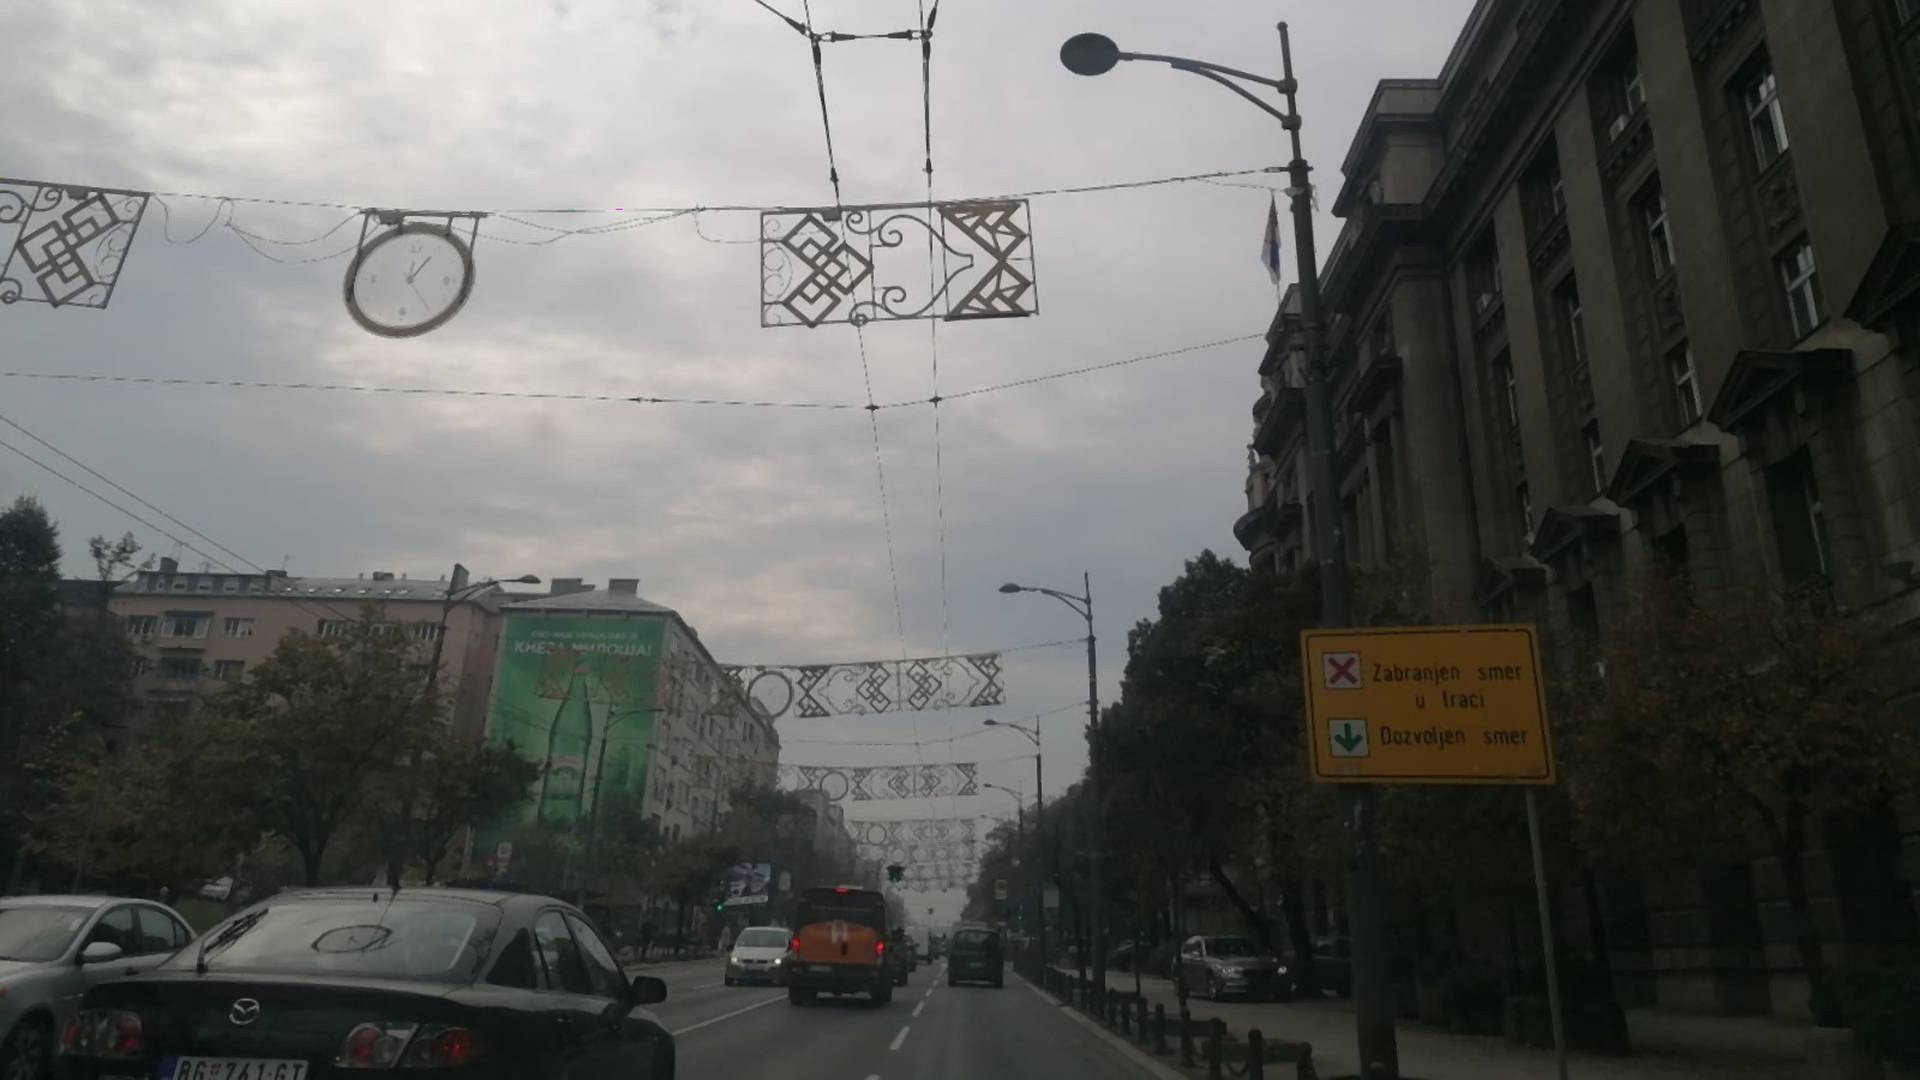 Novogodišnja rasveta i ove godine poranila - novembar je, a Beograd je već okićen